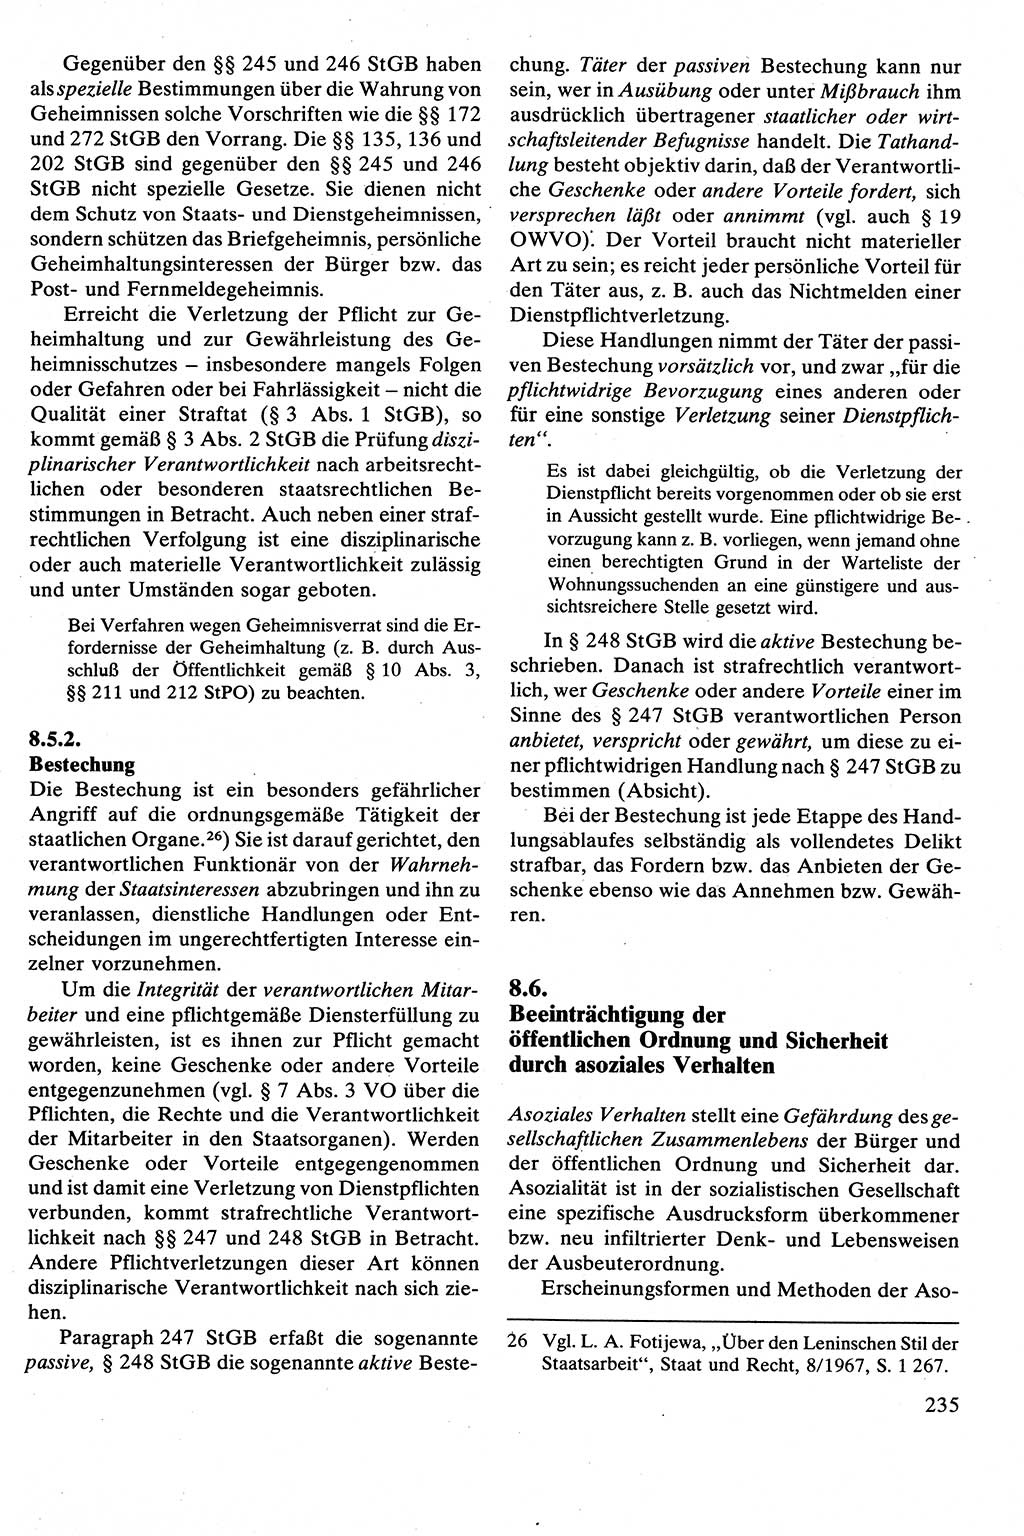 Strafrecht [Deutsche Demokratische Republik (DDR)], Besonderer Teil, Lehrbuch 1981, Seite 235 (Strafr. DDR BT Lb. 1981, S. 235)